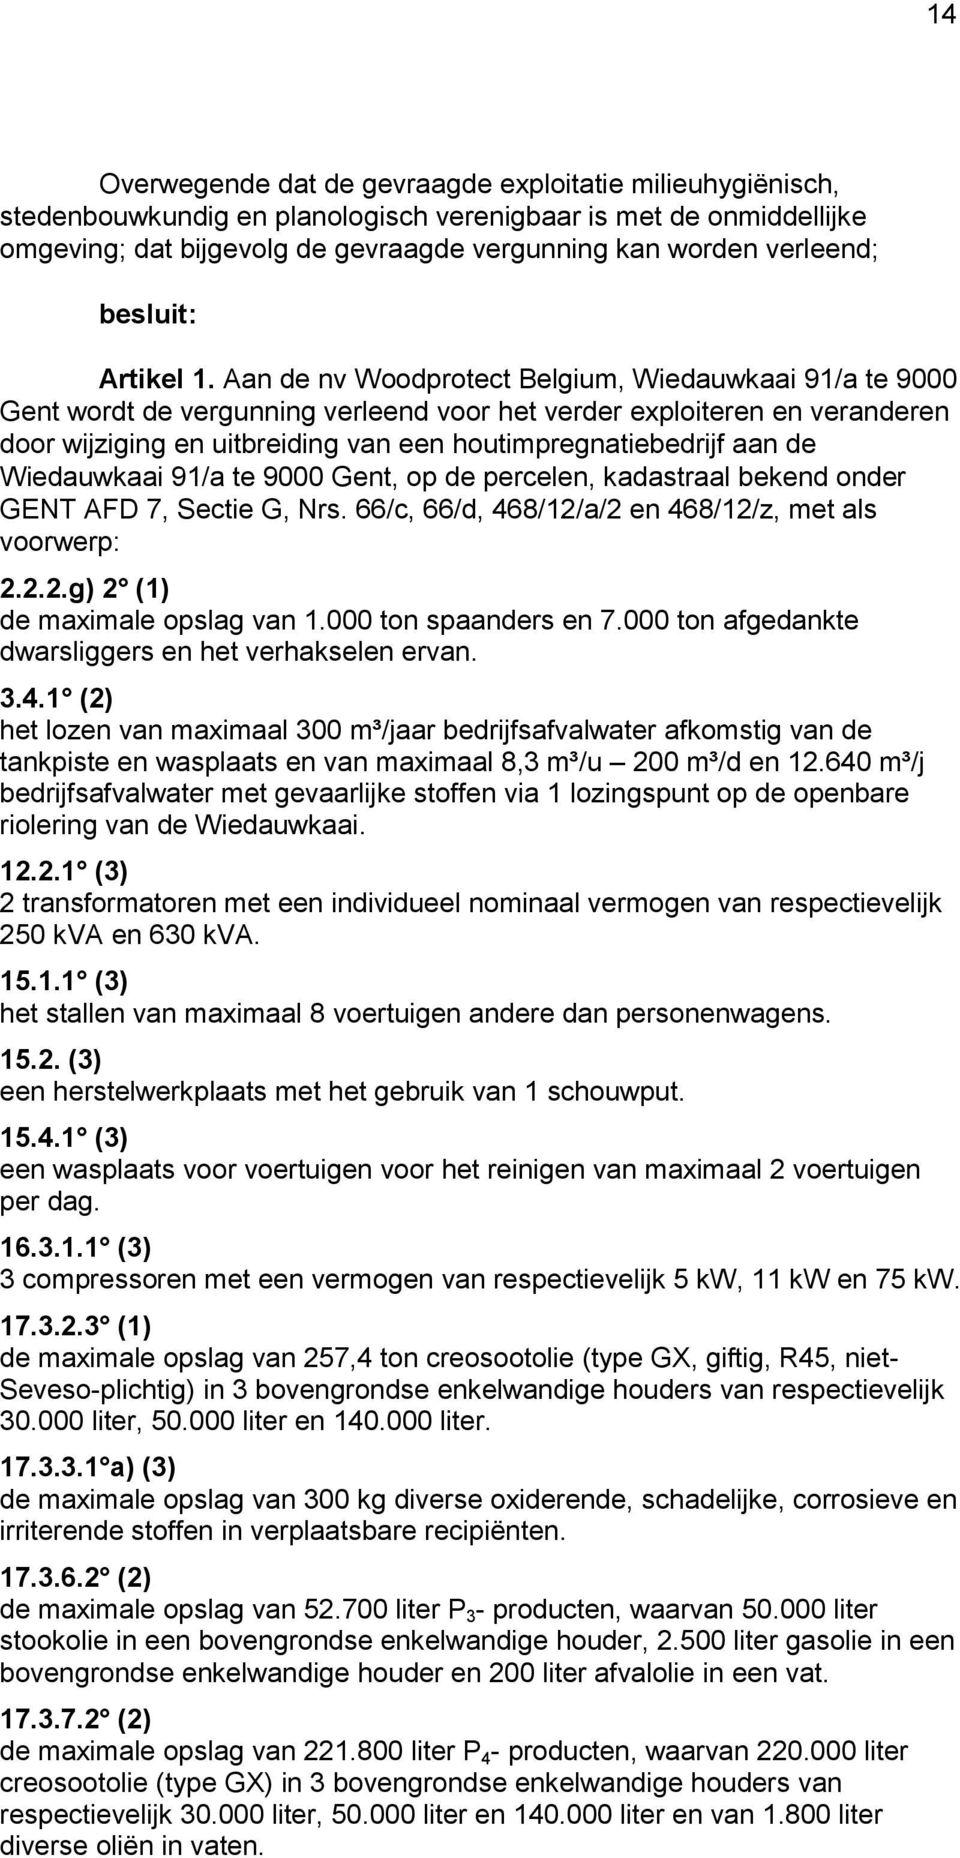 Aan de nv Woodprotect Belgium, Wiedauwkaai 91/a te 9000 Gent wordt de vergunning verleend voor het verder exploiteren en veranderen door wijziging en uitbreiding van een houtimpregnatiebedrijf aan de